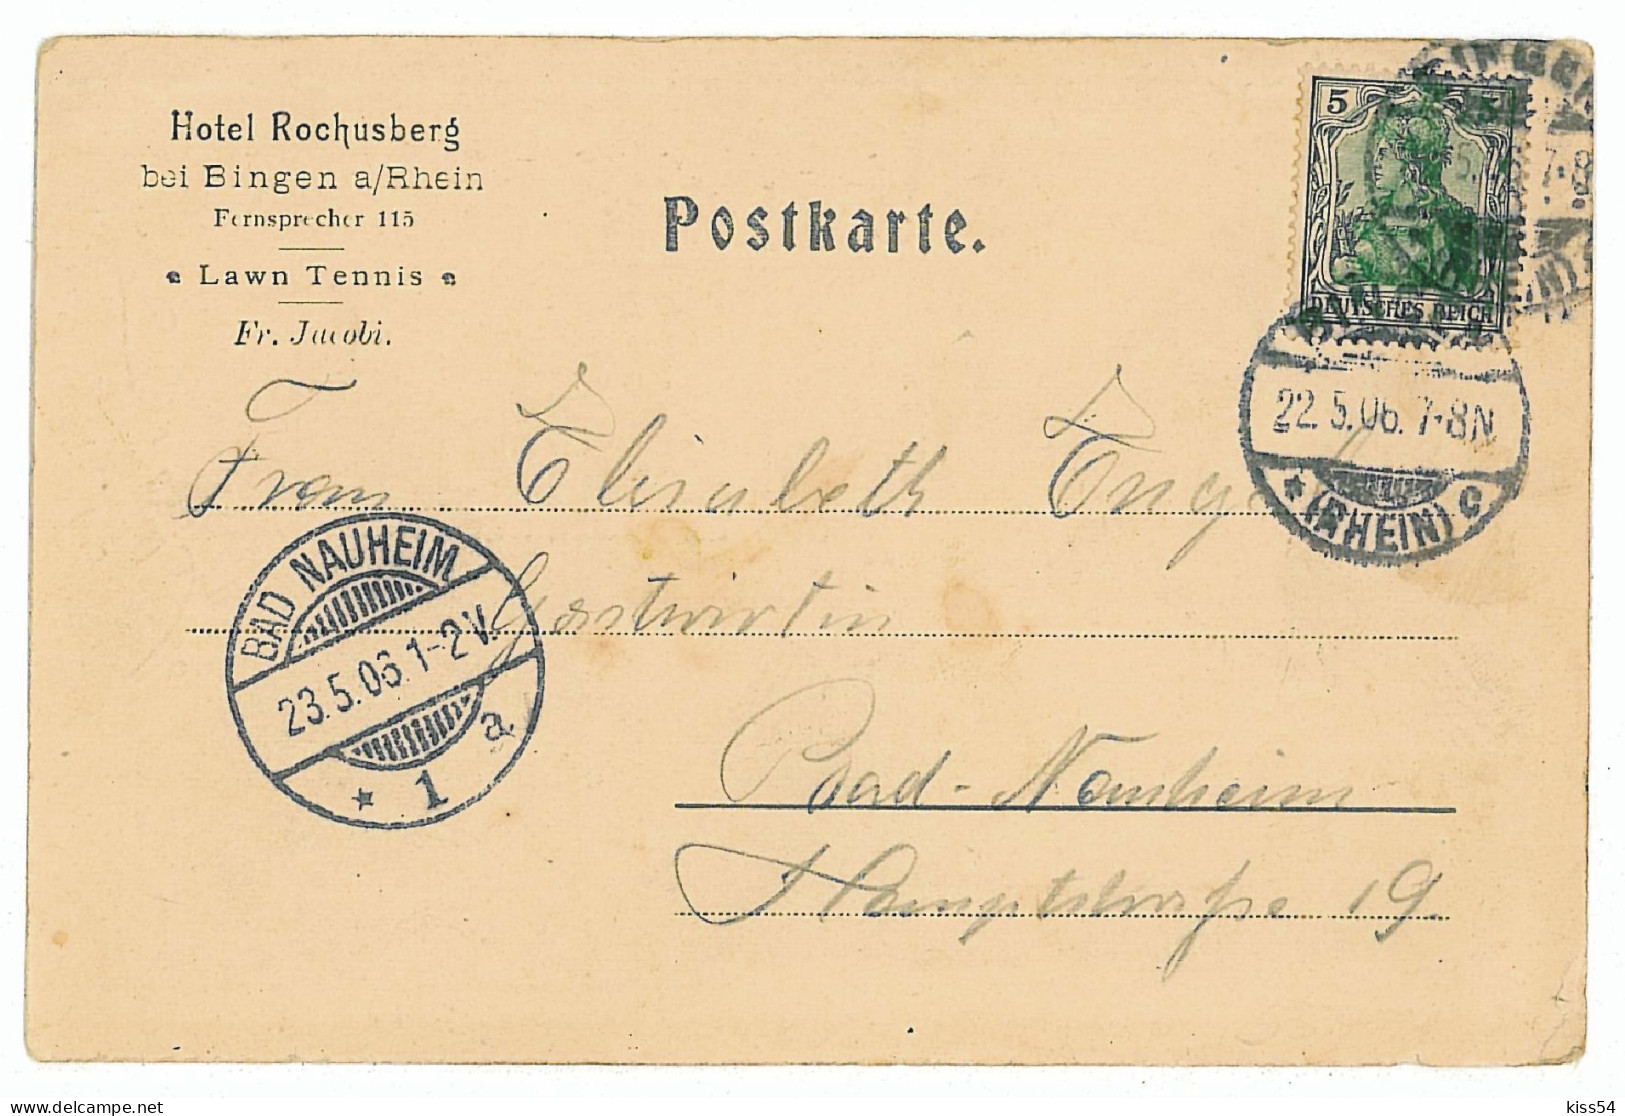 GER 46 - 5797 BINGEN, Litho, Germany - Old Postcard - Used - 1906 - Bingen